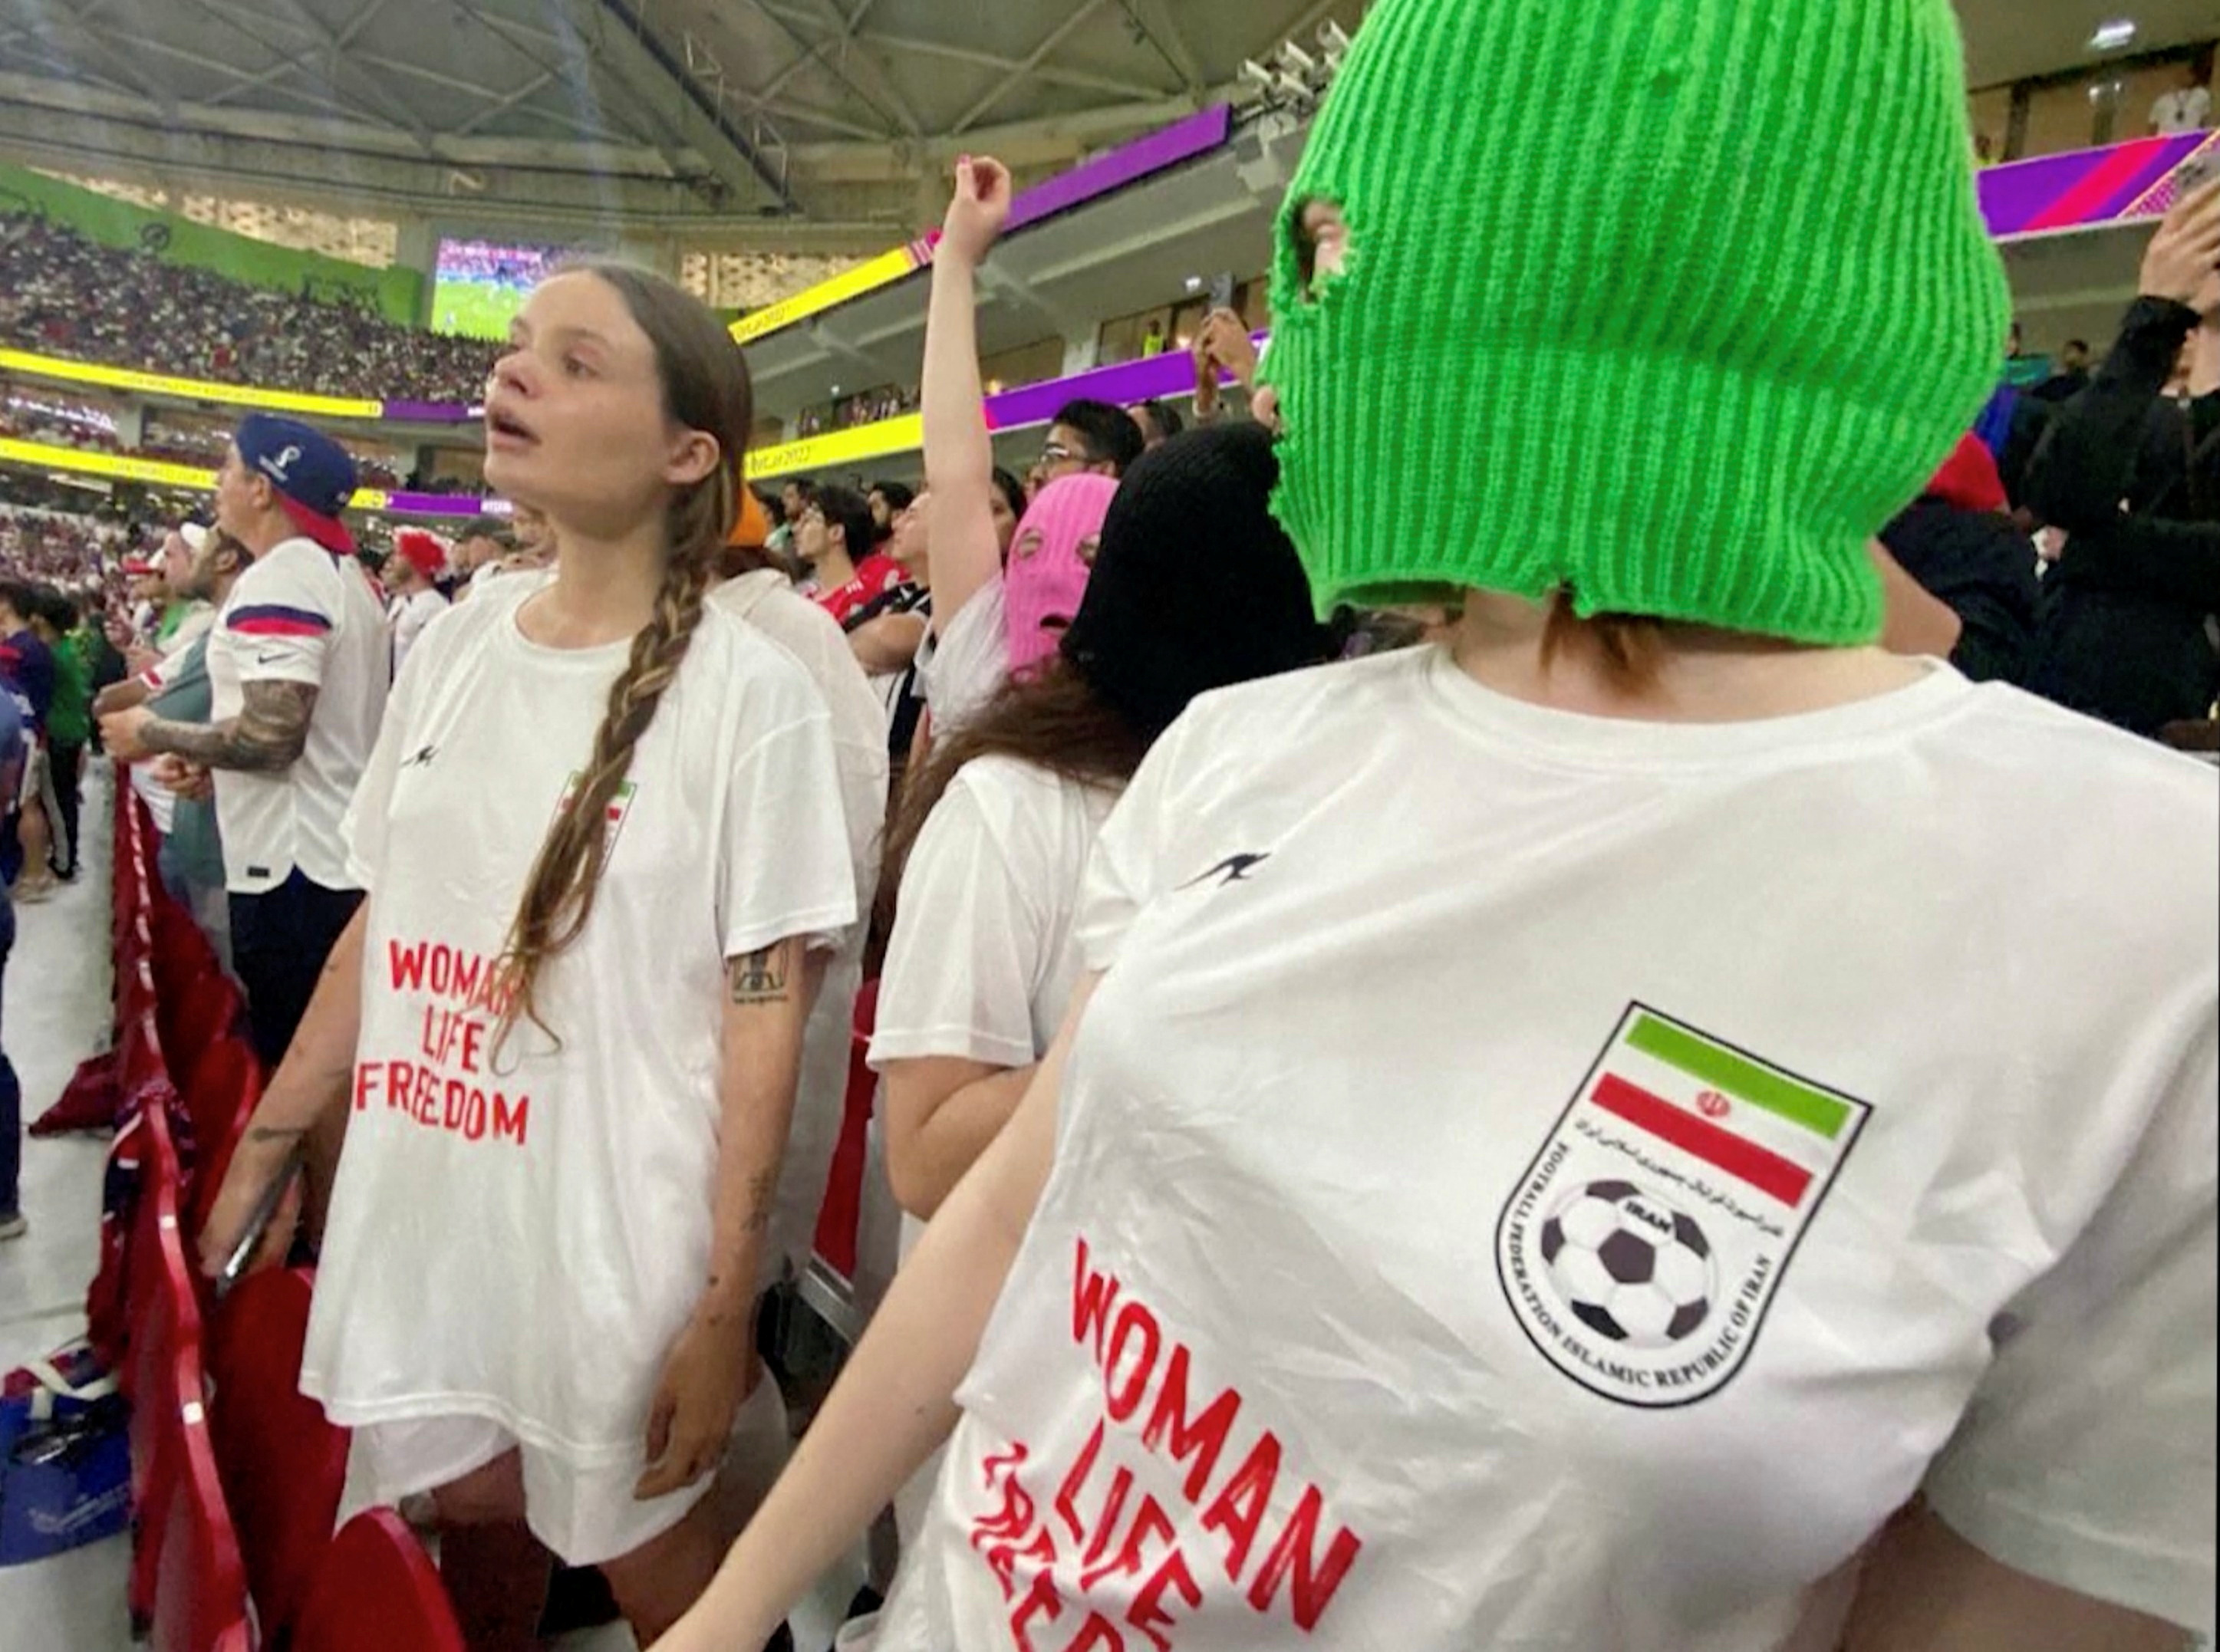 Las Pussy Riot en el Mundial Qatar 2022. Durante el partido Irán-Estados Unidos, vistieron remeras en solidaridad con las mujeres iraníes (Foto: Cinema for Peace Foundation/Handout via REUTERS)